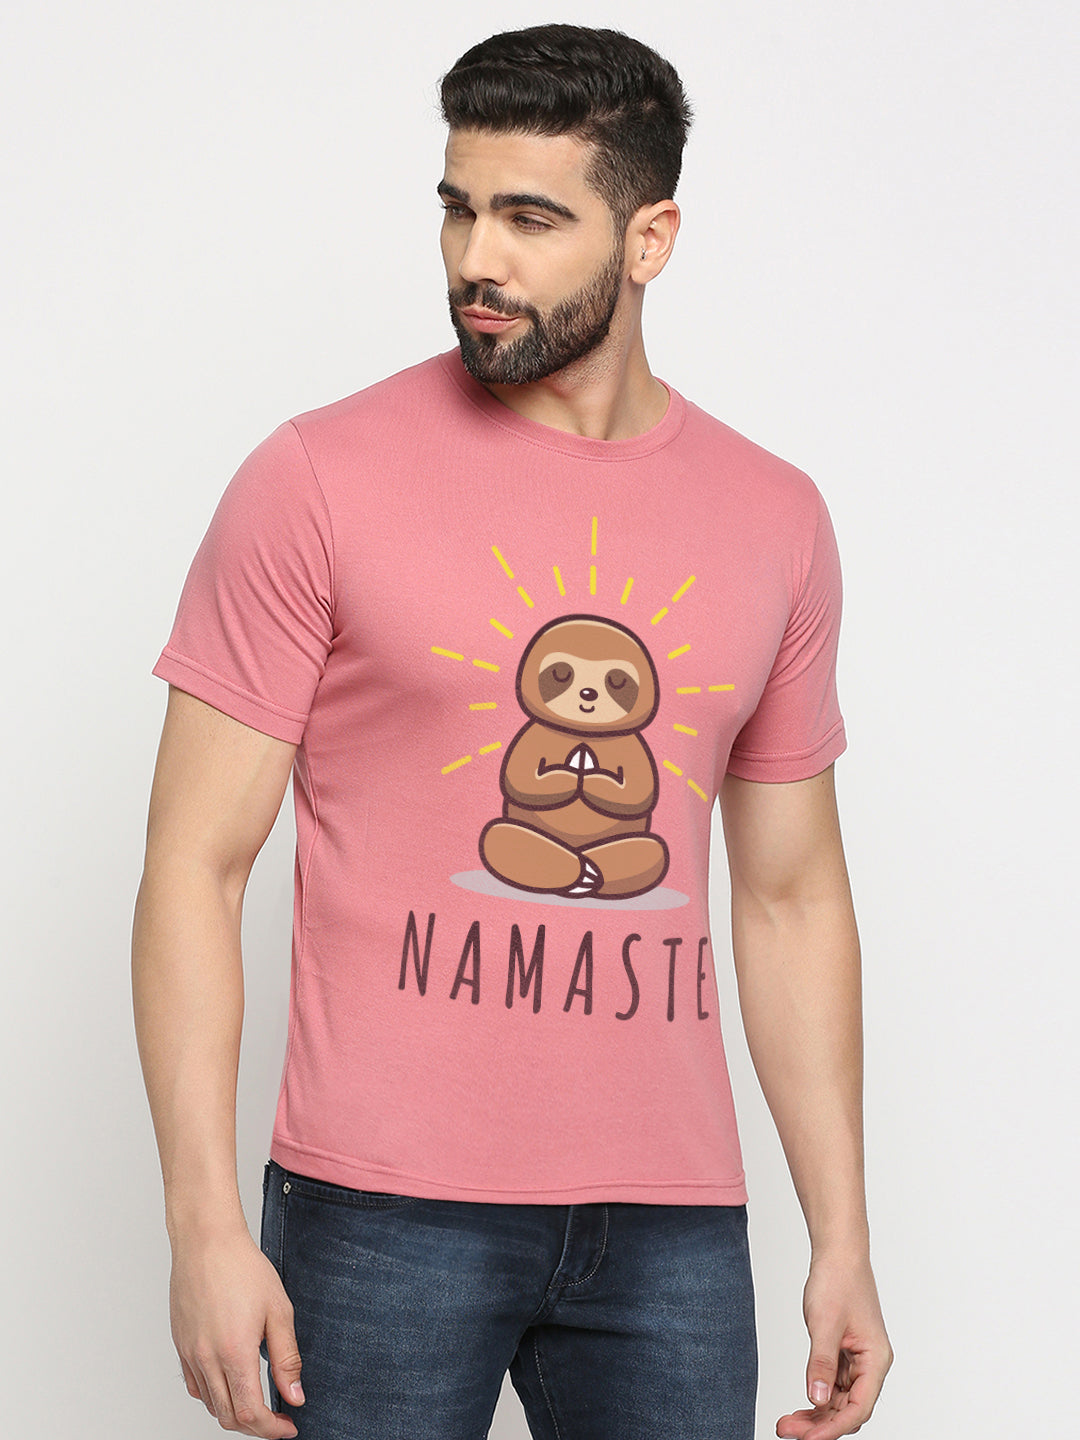 Namaste Yoga T-Shirt